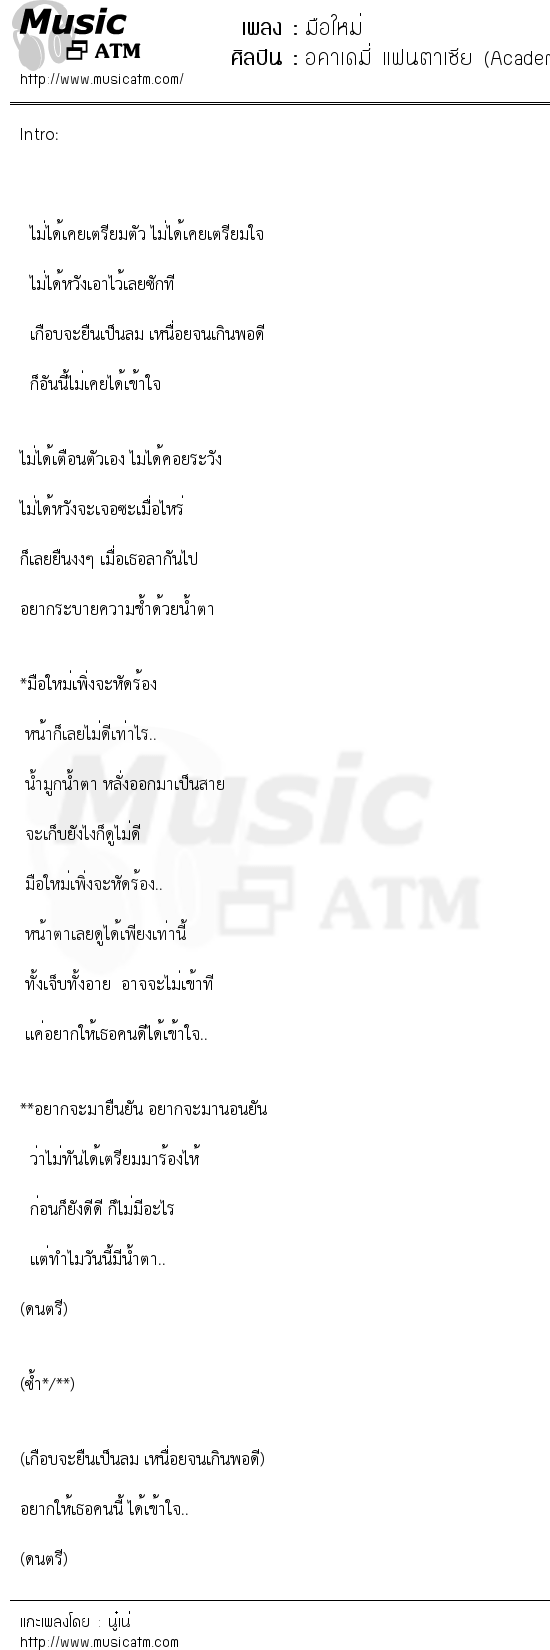 เนื้อเพลง มือใหม่ - อคาเดมี่ แฟนตาเซีย (Academy fantasia 3) | เพลงไทย